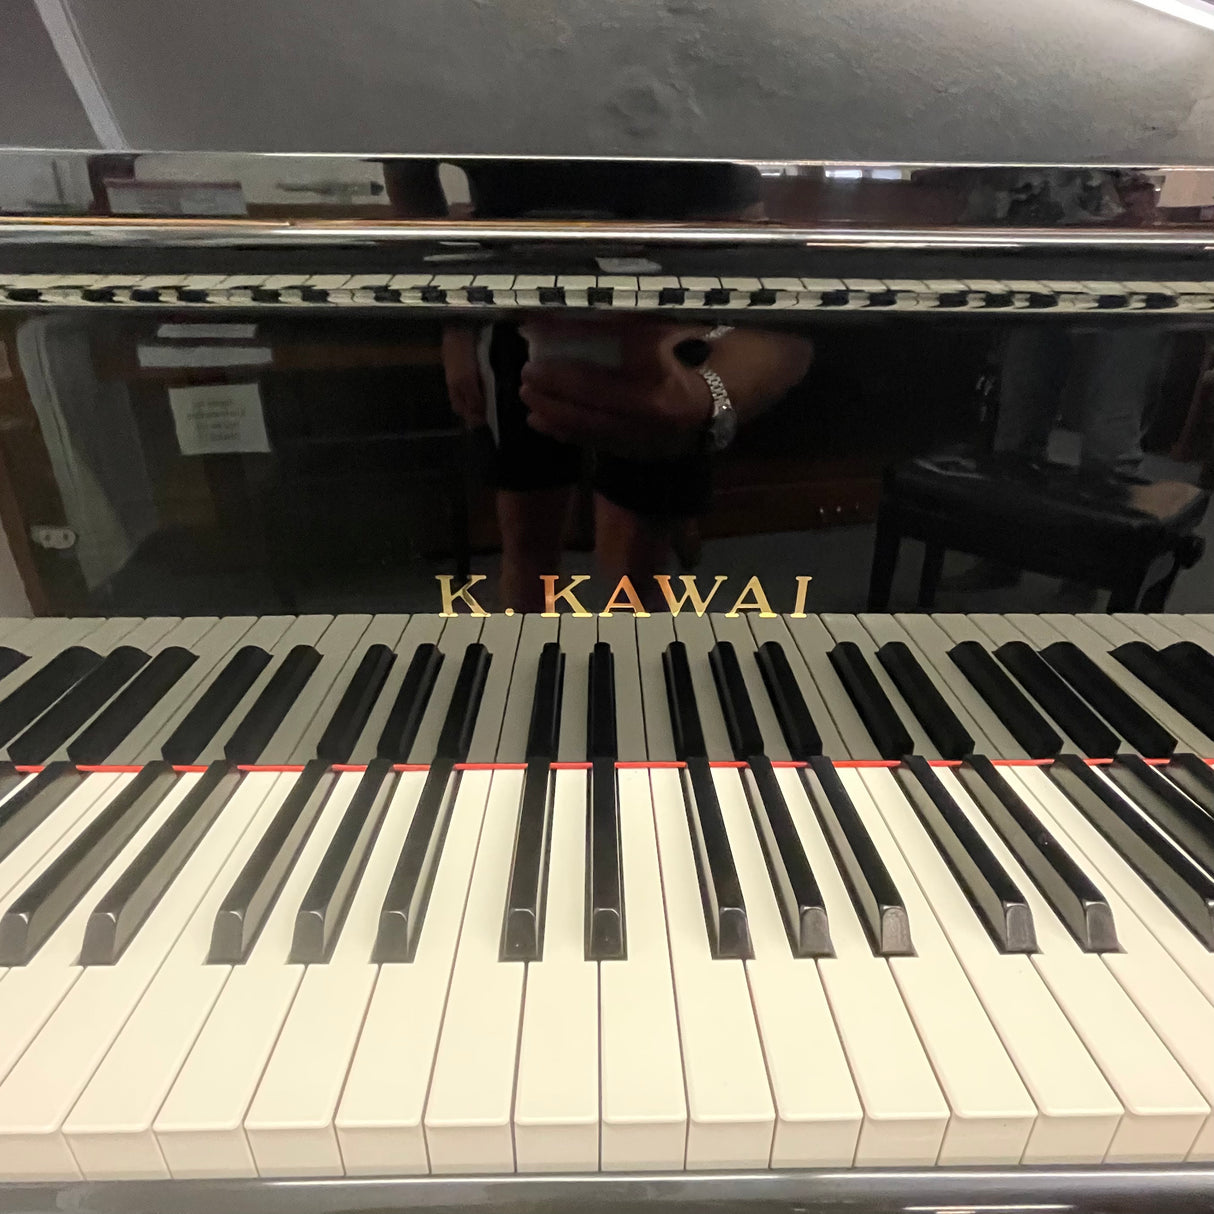 KAWAI Flügel Mod. RX 1 schwarz poliert 164 cm , Bestzustand, original made in Japan Bj. 2010 (gebraucht) - Musik-Ebert Gmbh